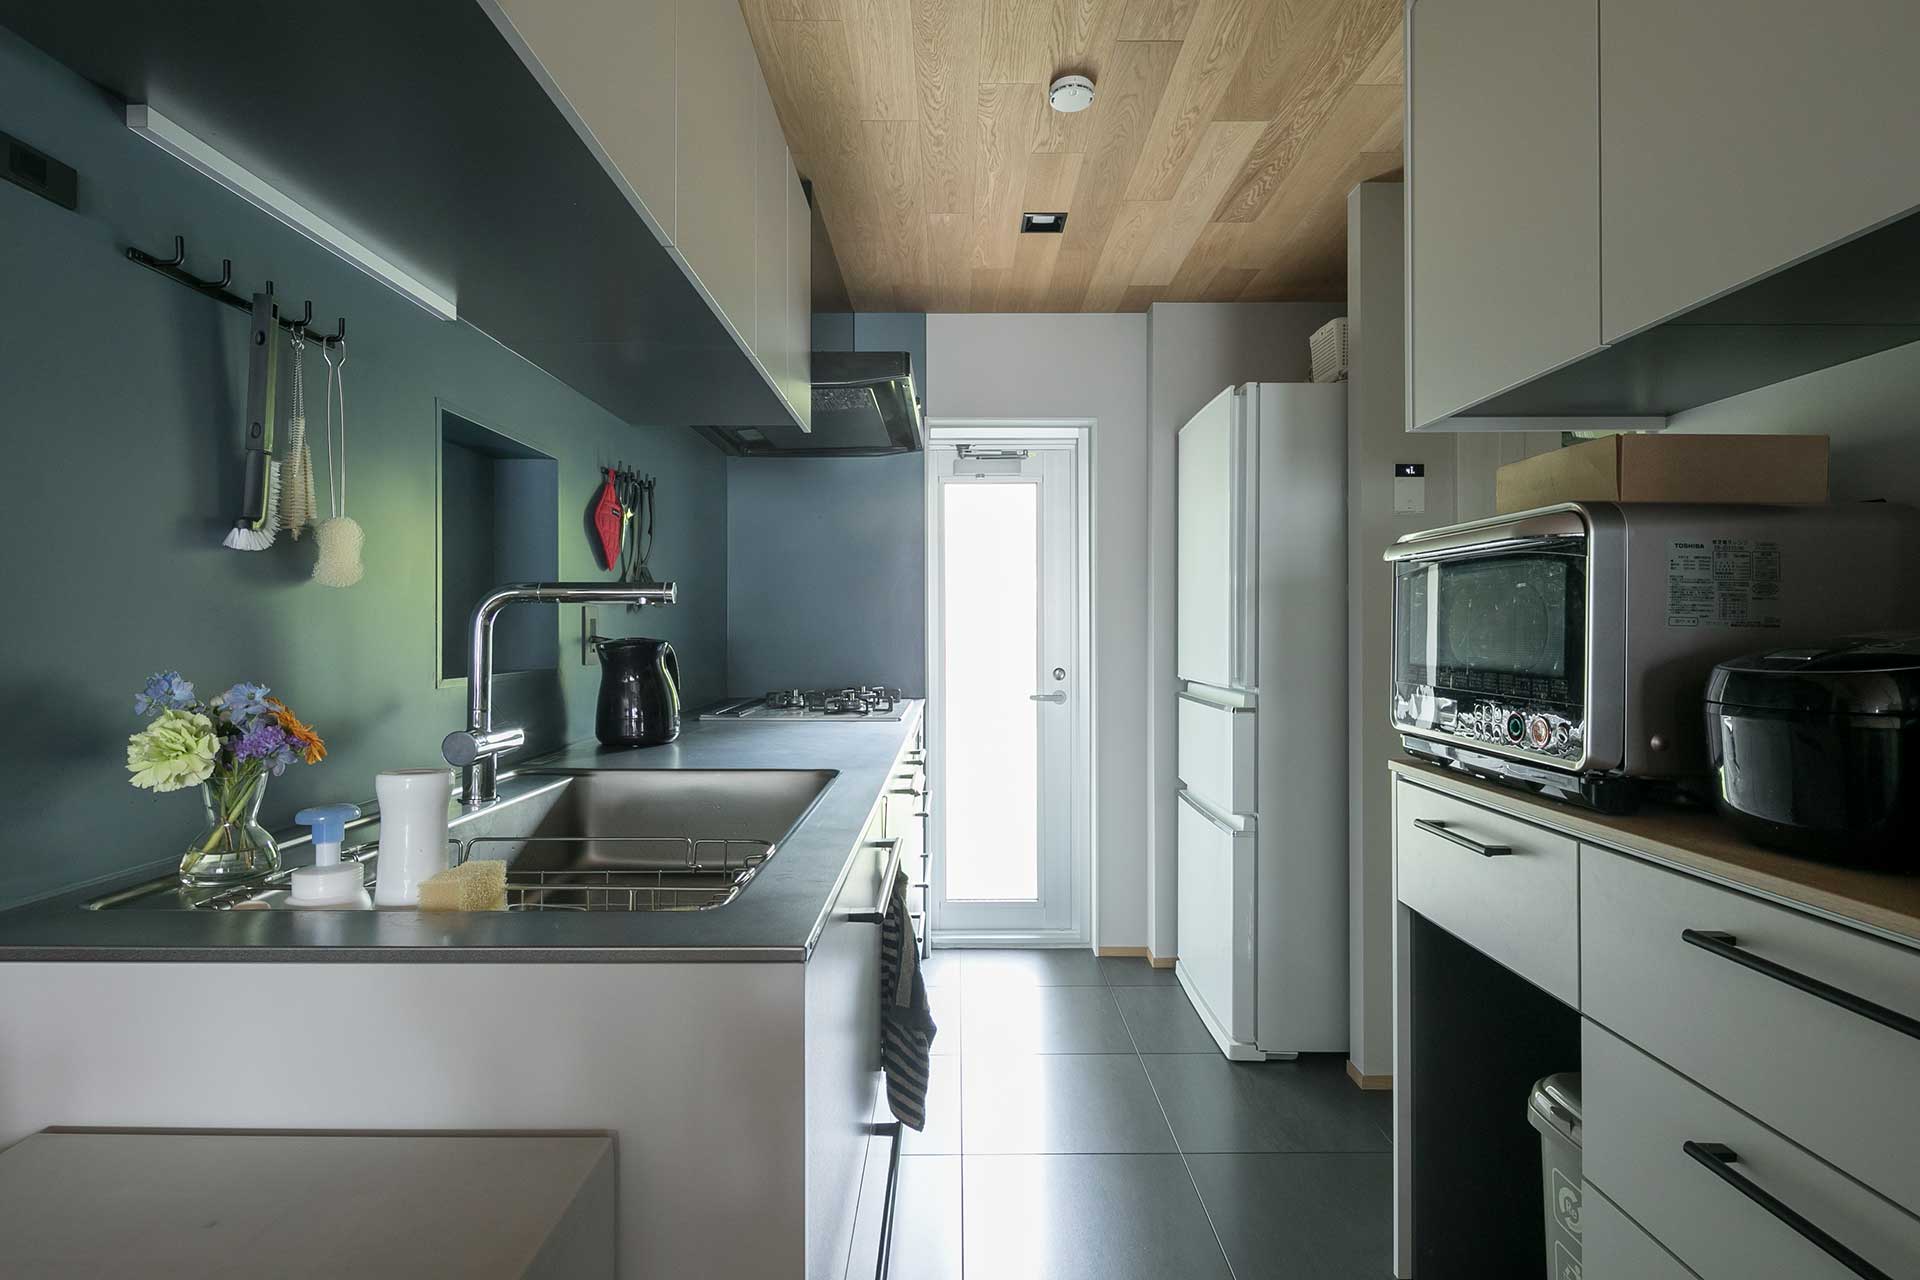 エメラルドグリーンの壁紙とオークの天井が美しい造作のキッチン